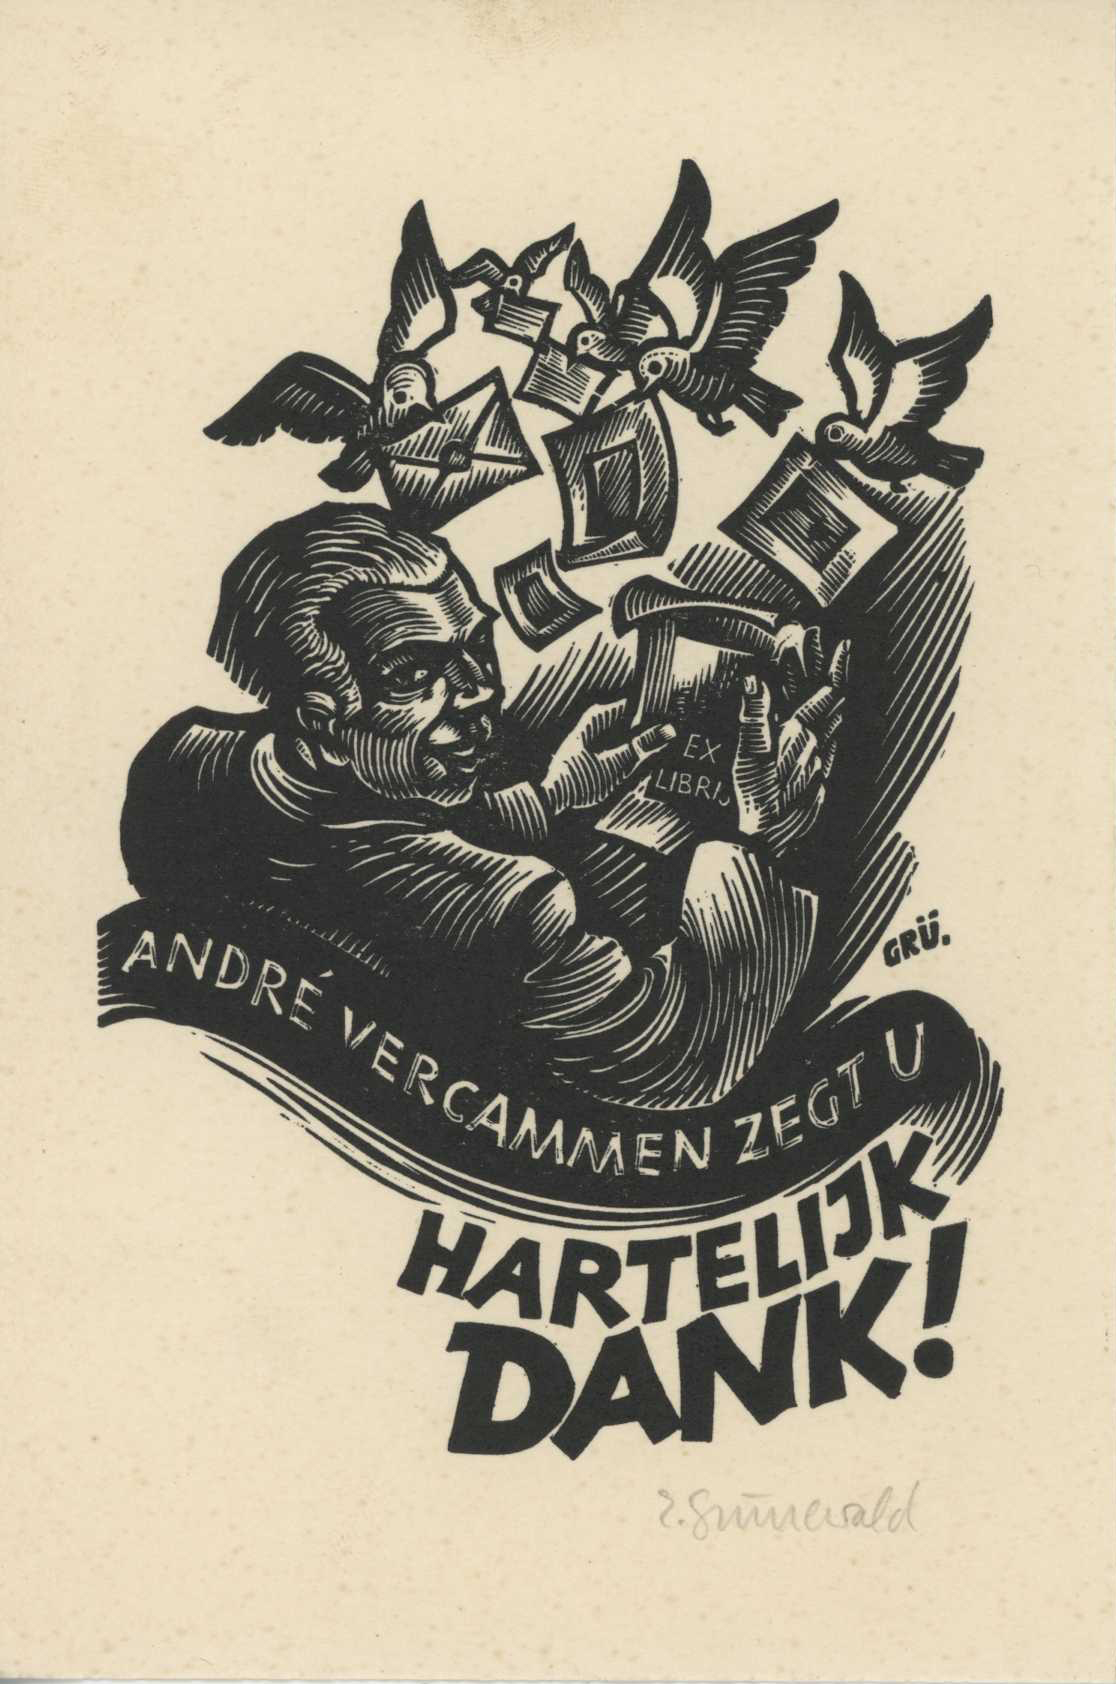 Featured image for “Hartelijk dank 1950”